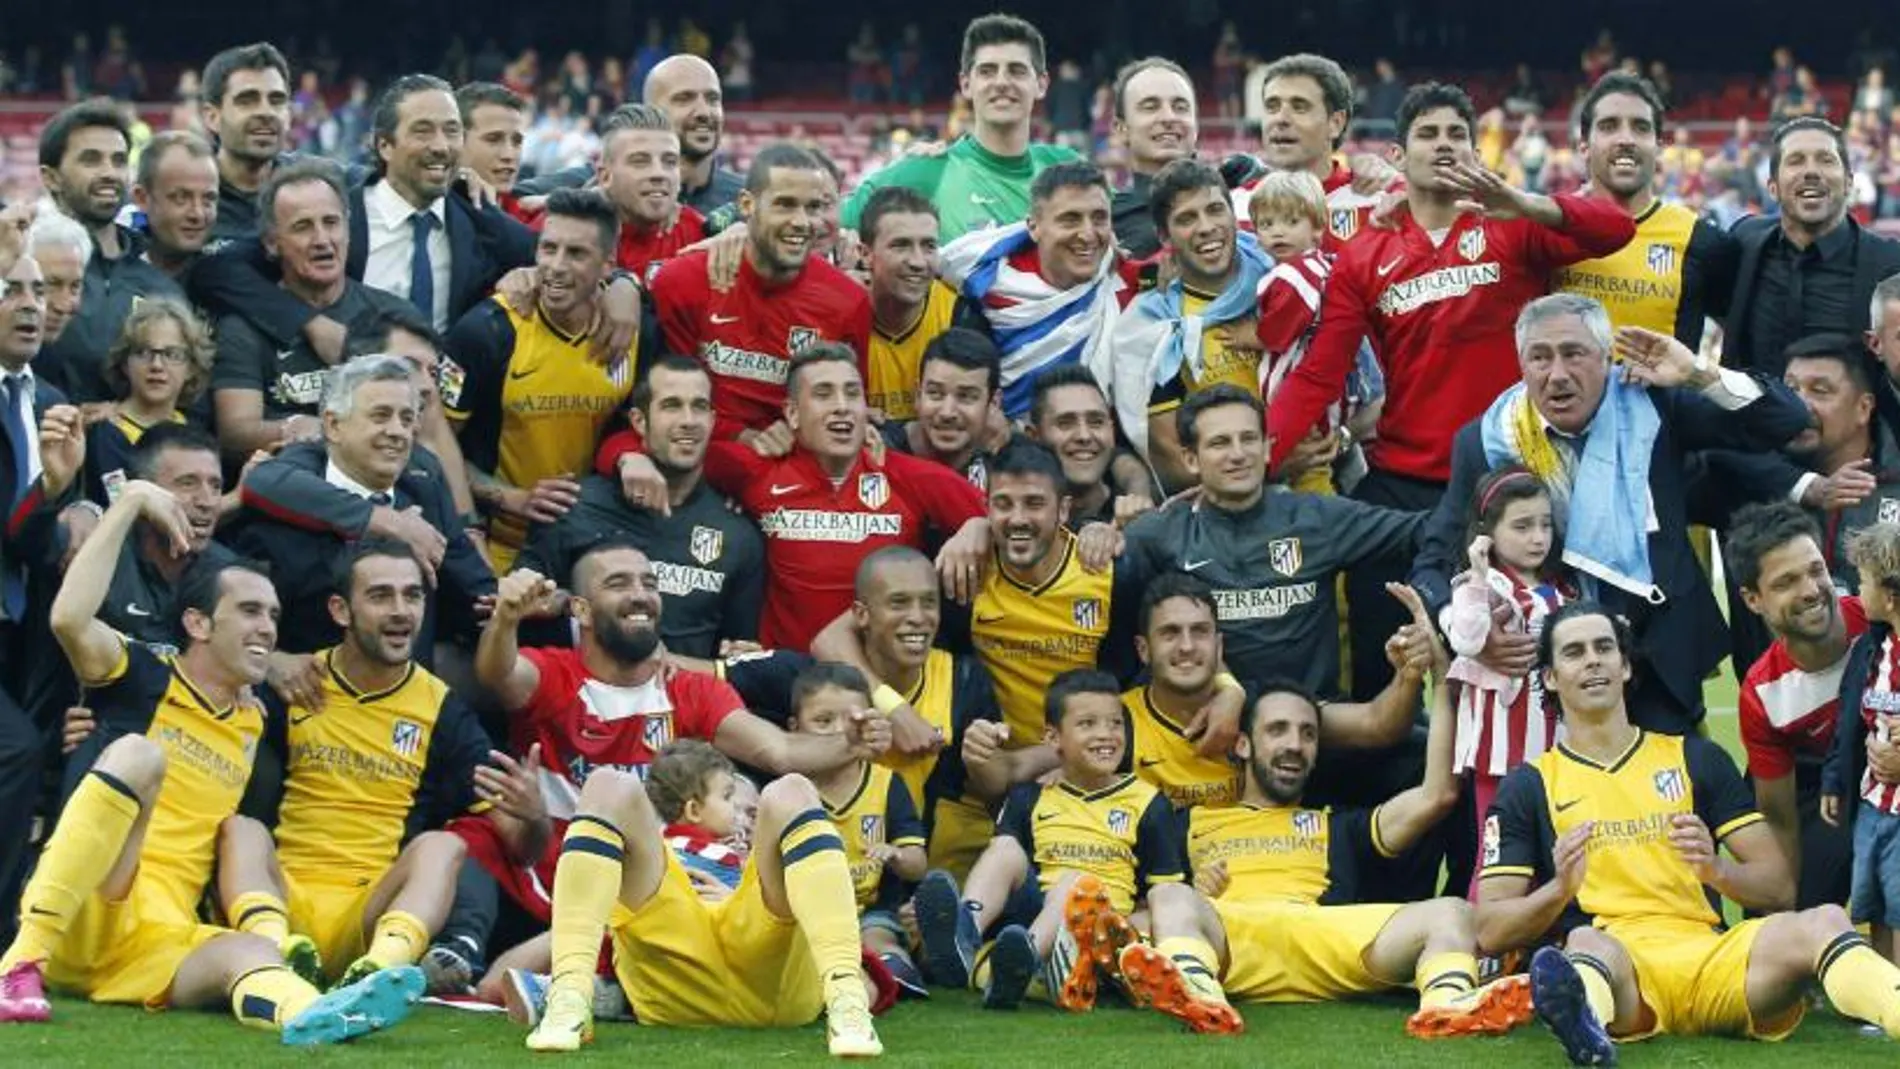 Foto de familia de los jugadores, entrenadores y cuerpo técnico del Atlético de Madrid tras resultar campeones de la Liga.